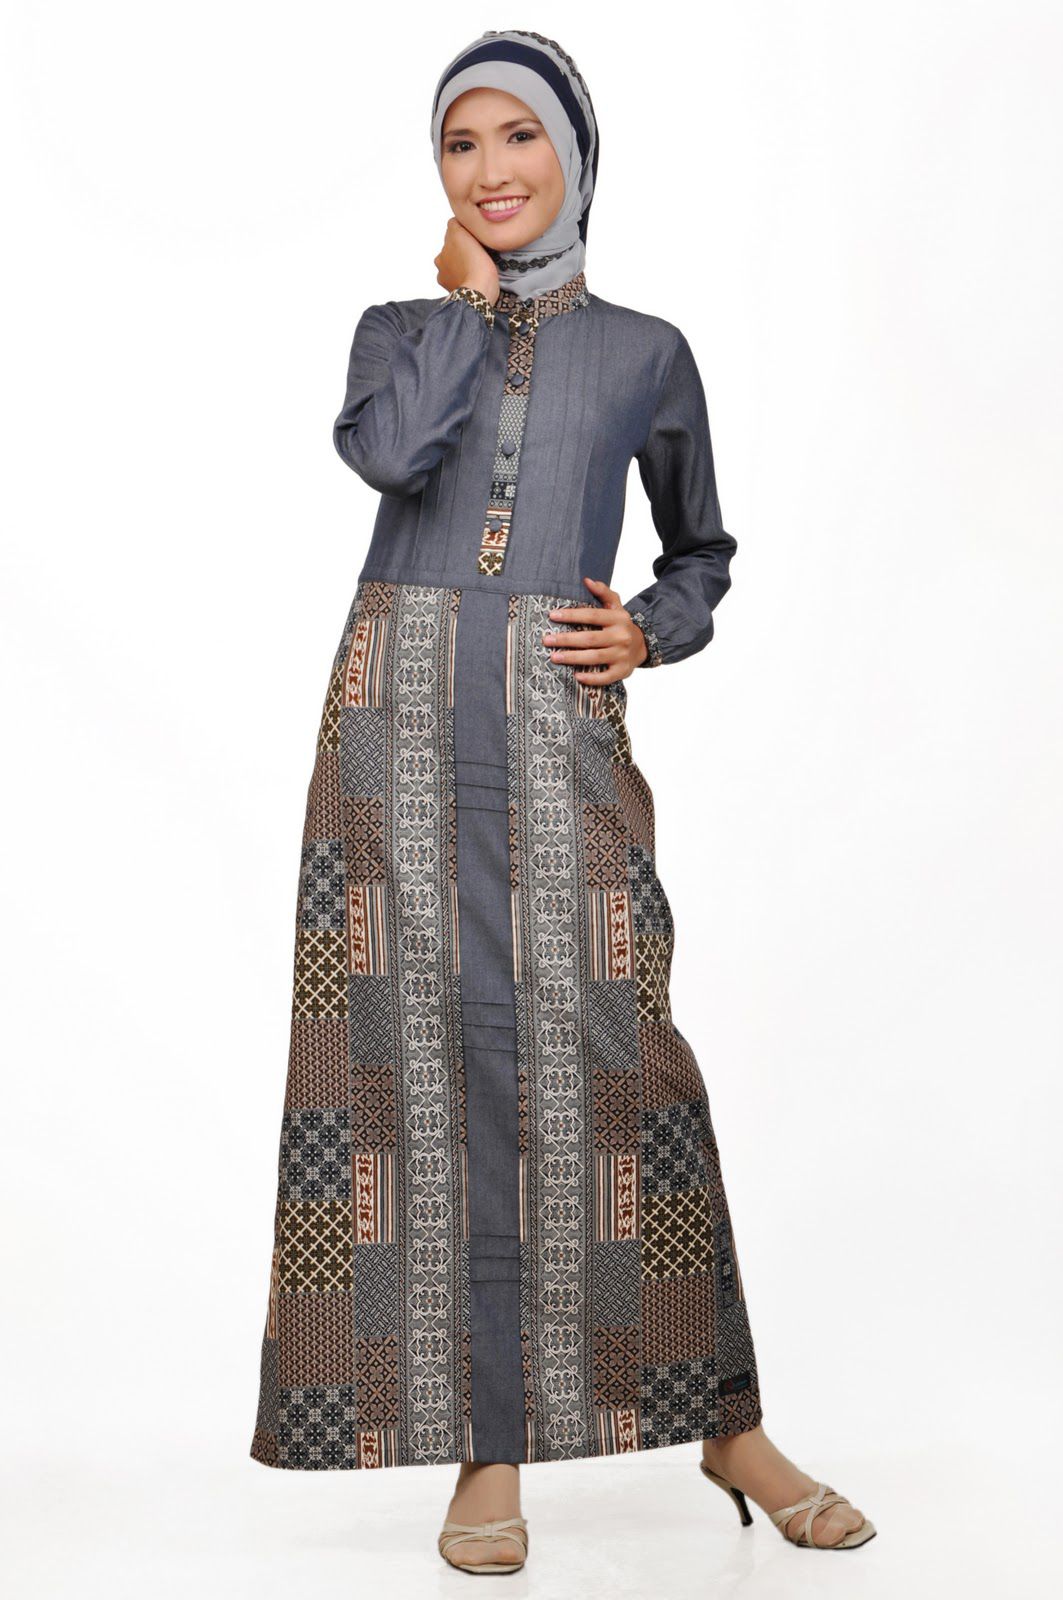 Contoh Model  Baju  Gamis  Batik Terbaru 2019